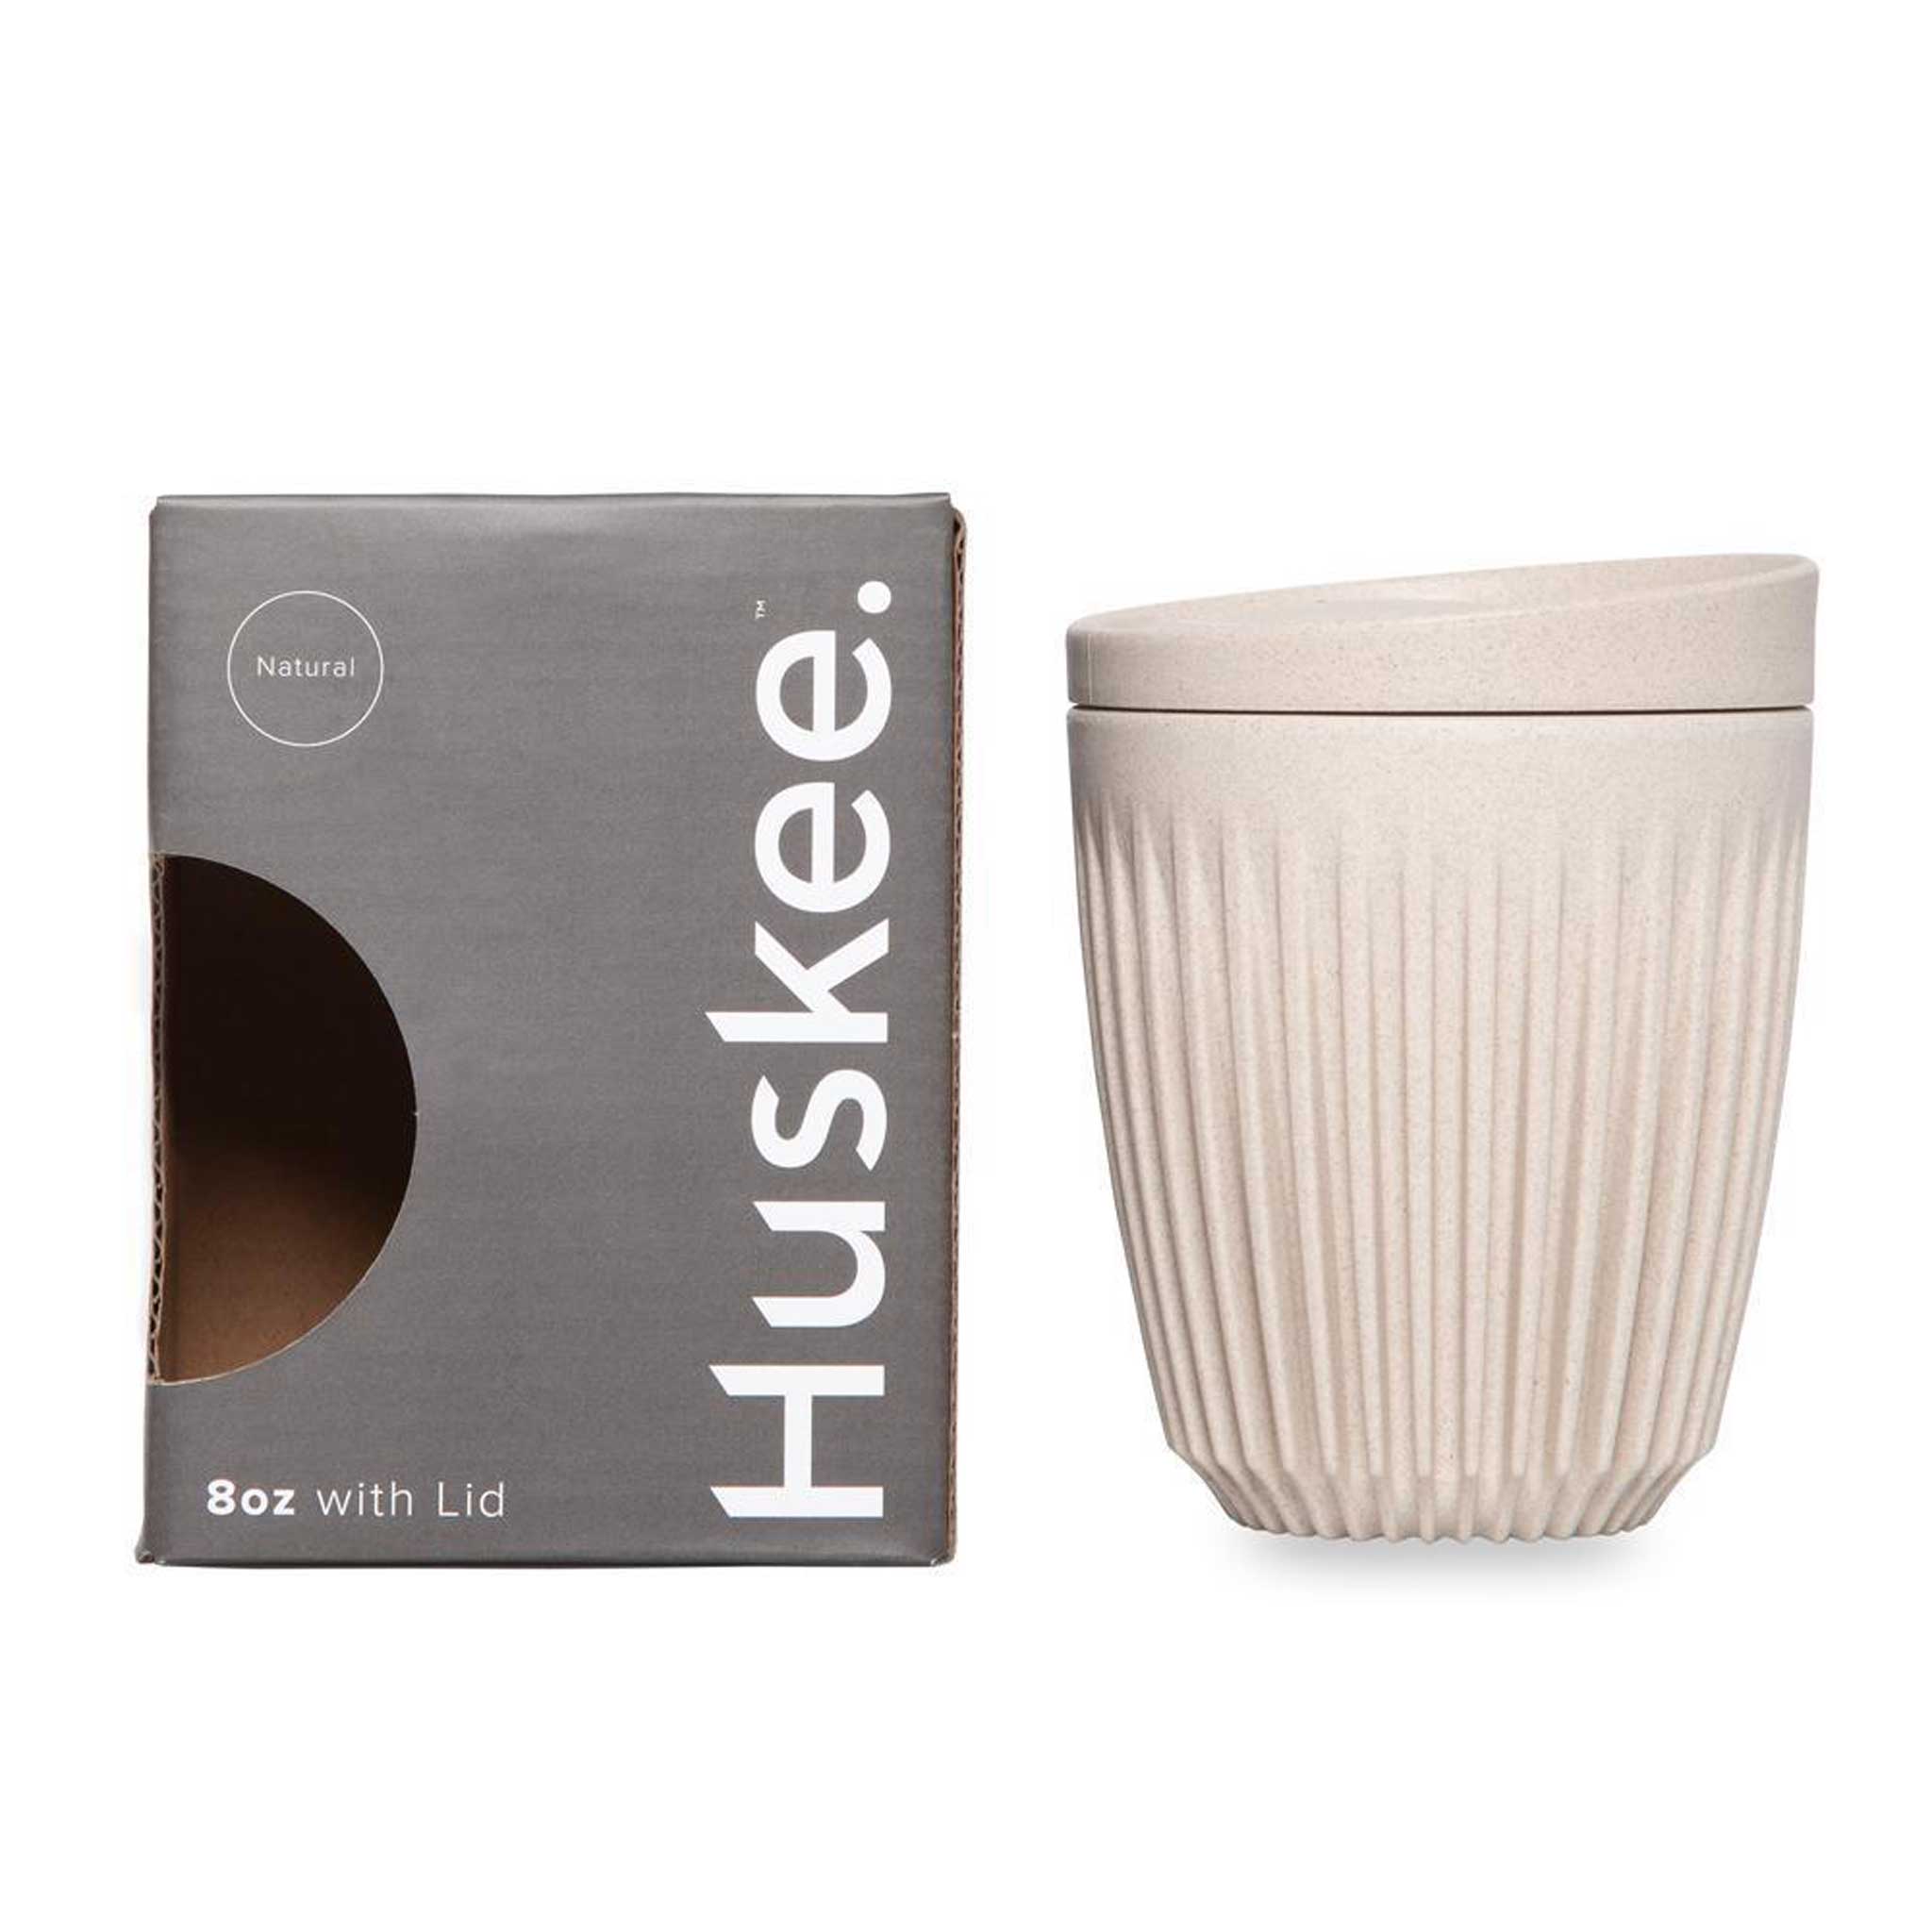 HUSKEE CUP & LID Natur | wiederverwendbare KAFFEE & TEE-BECHER aus Kaffee-Schalen | Huskee - Charles & Marie